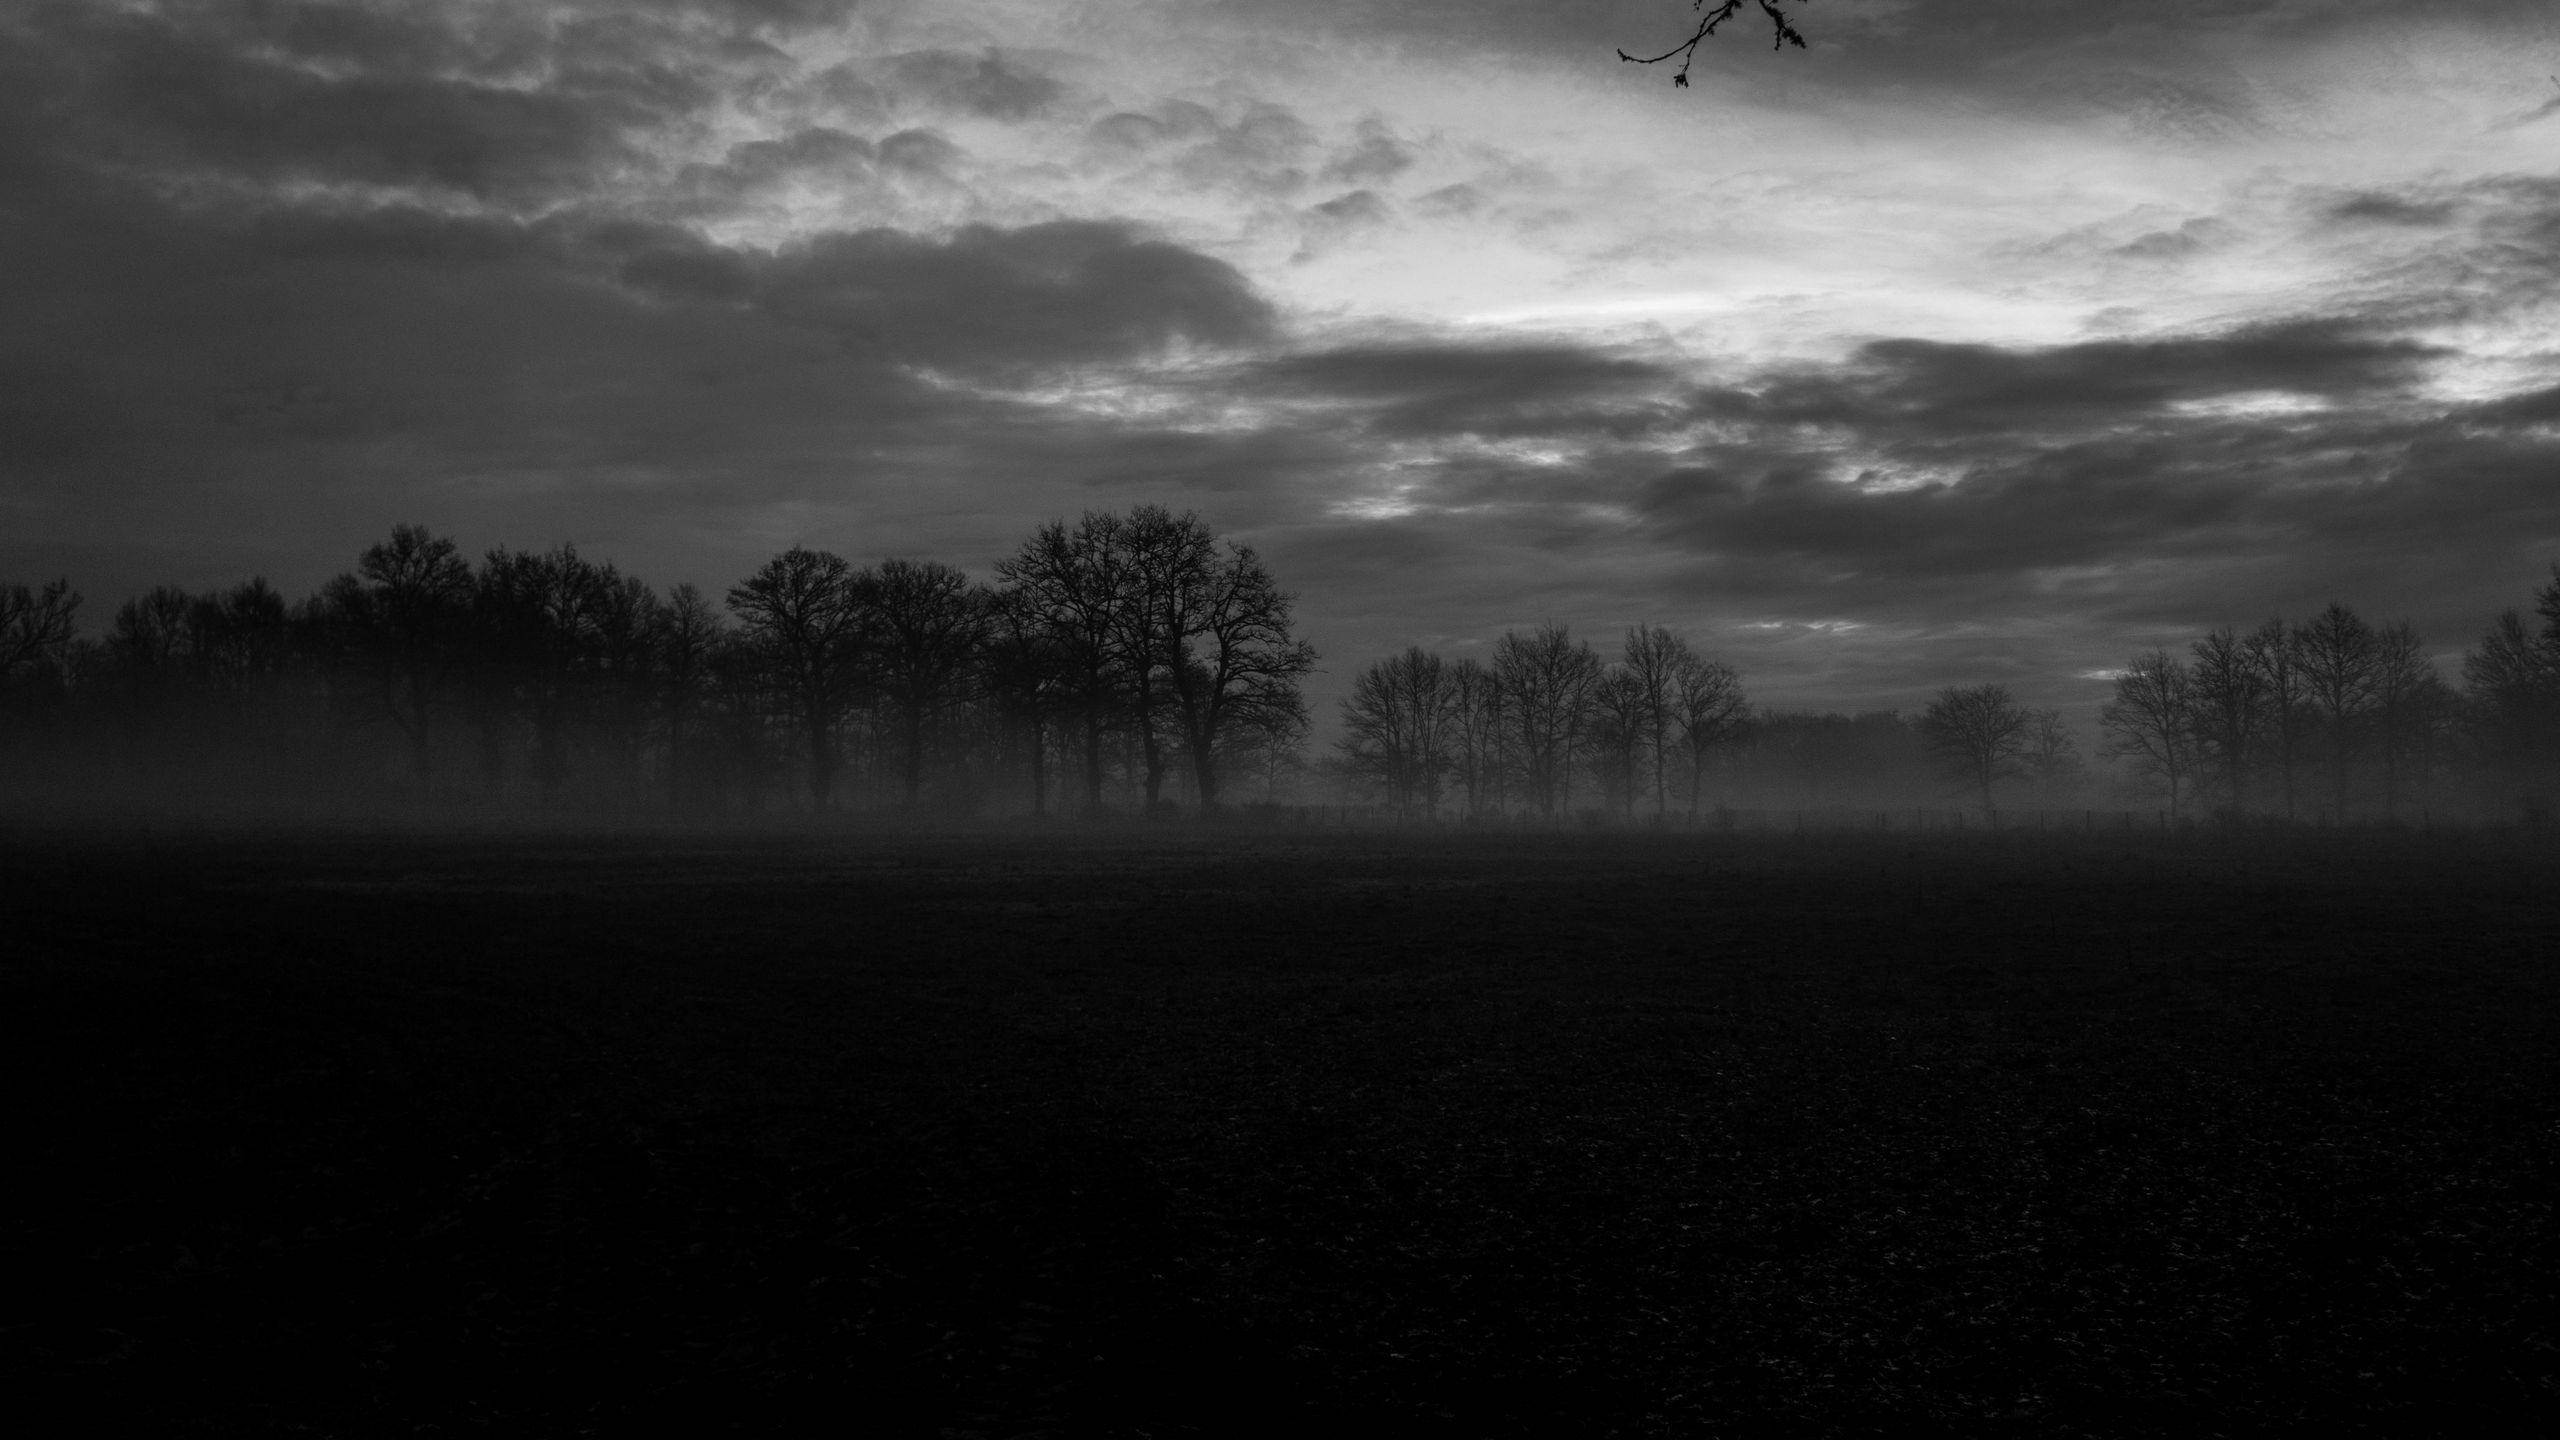 Фото пейзаж монохромный туман - бесплатные картинки на Fonwall